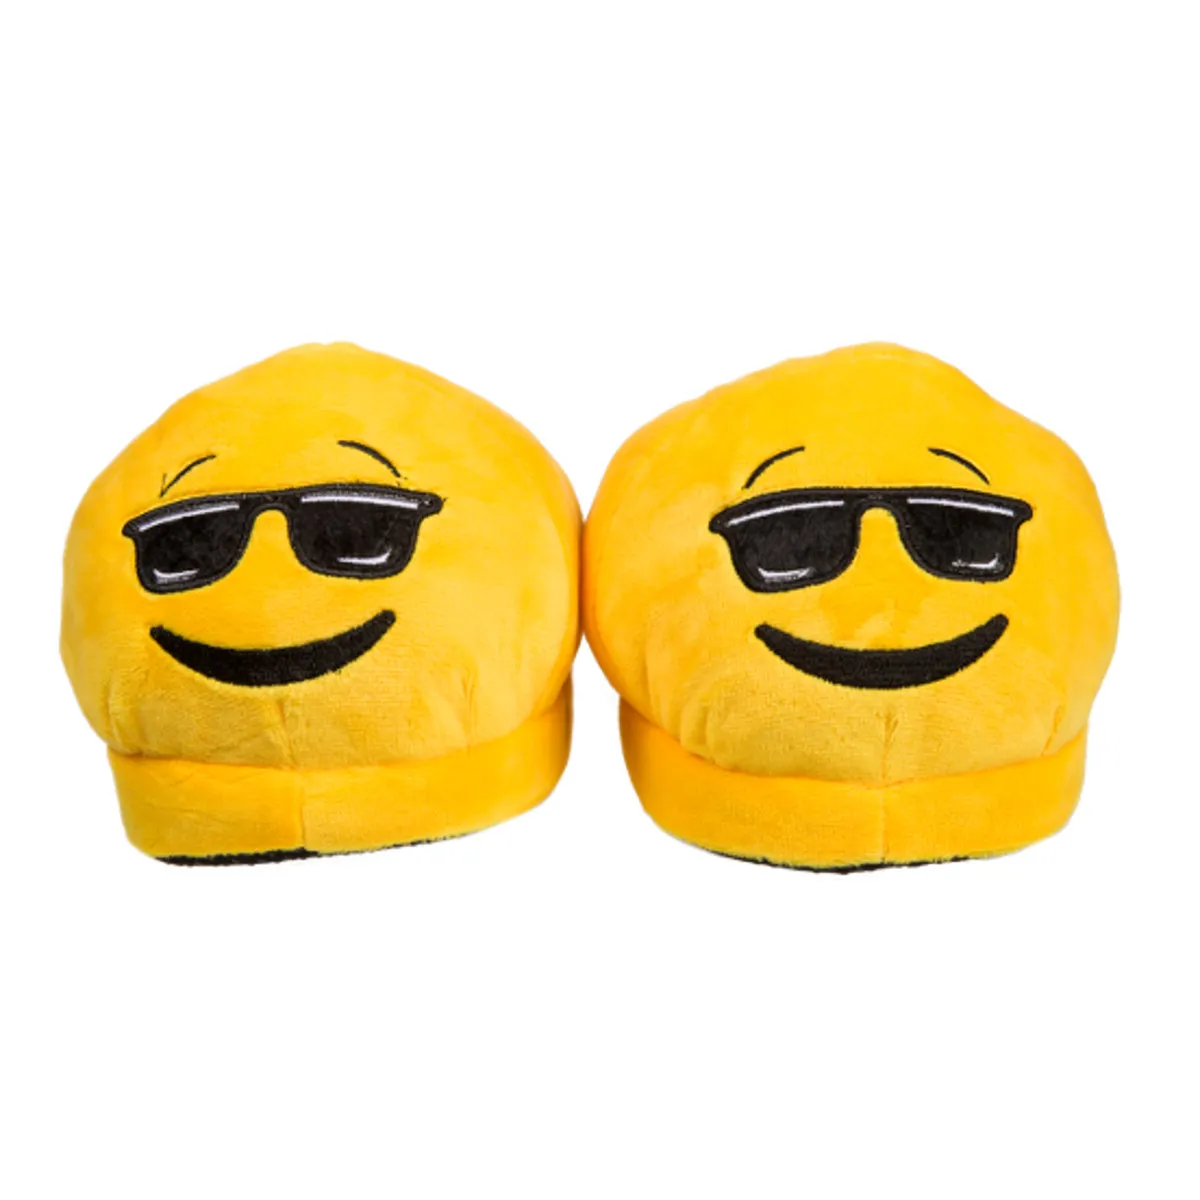 Kuschel-Hausschuhe Emoji – Smiley mit Sonnenbrille 39-40